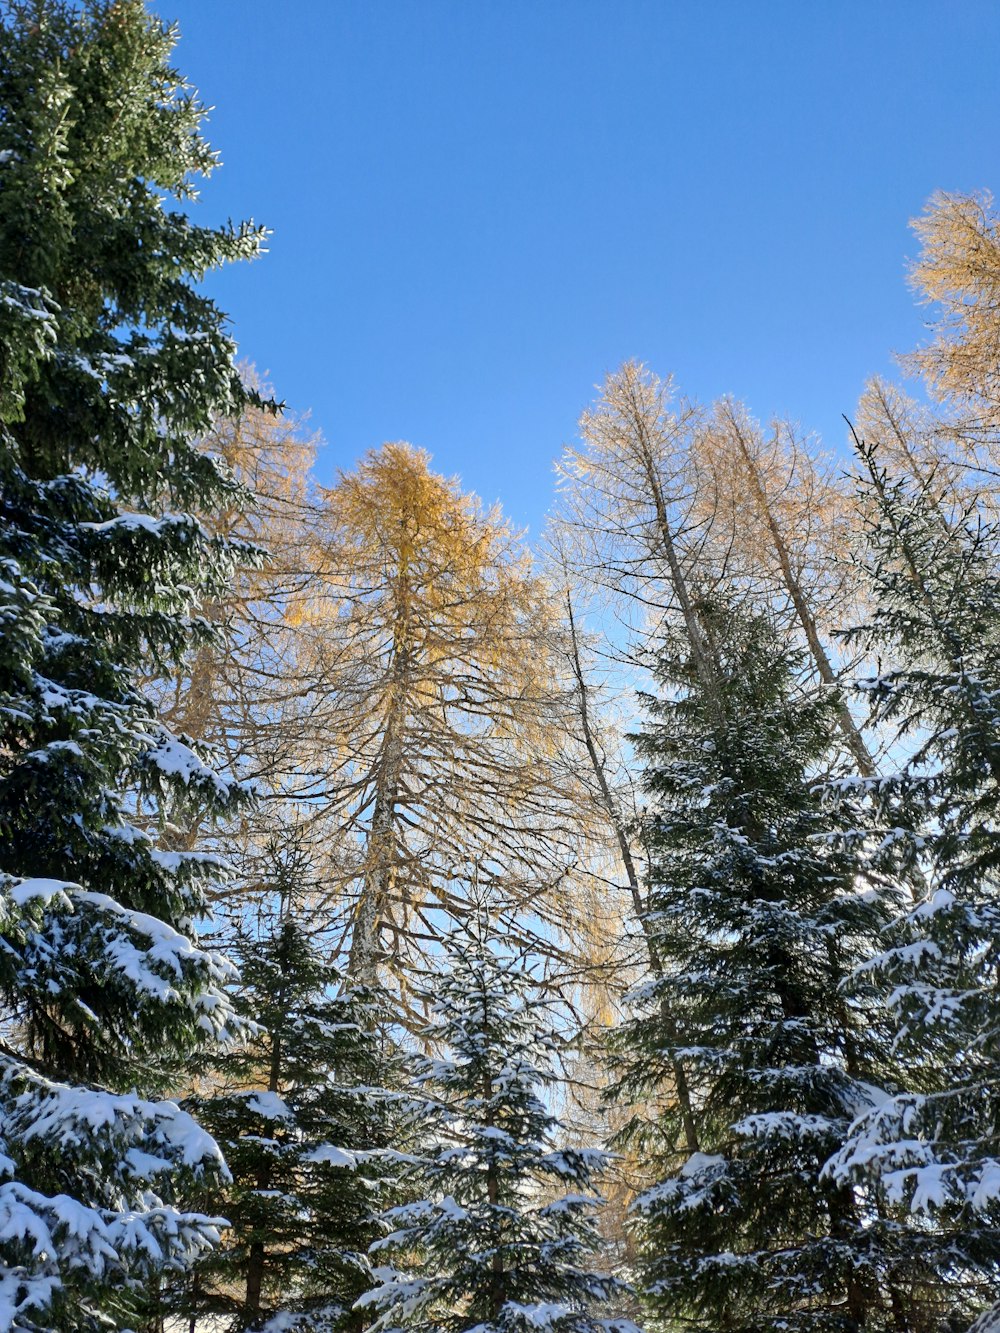 Un grupo de pinos cubiertos de nieve